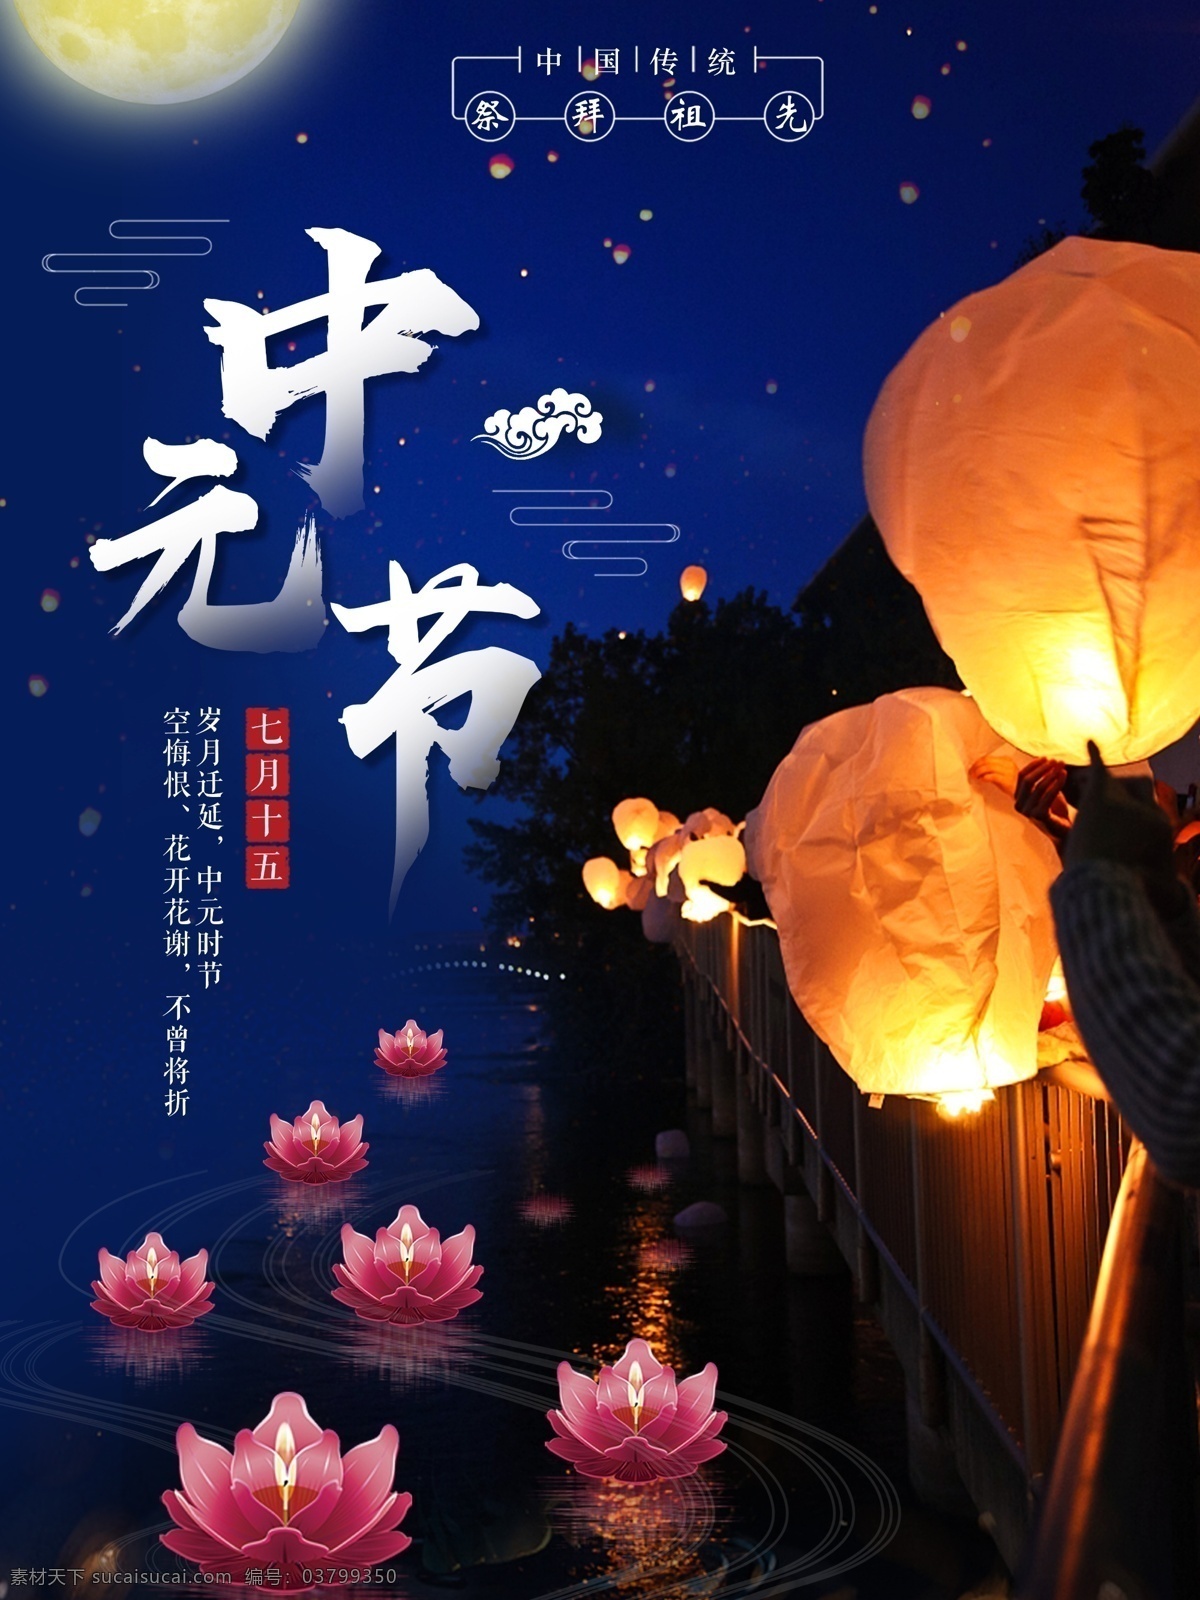 中元节 鬼节 七月 十 五 宣传海报 祭祀 祭祖 中国传统节日 七月十五 思亲 习俗